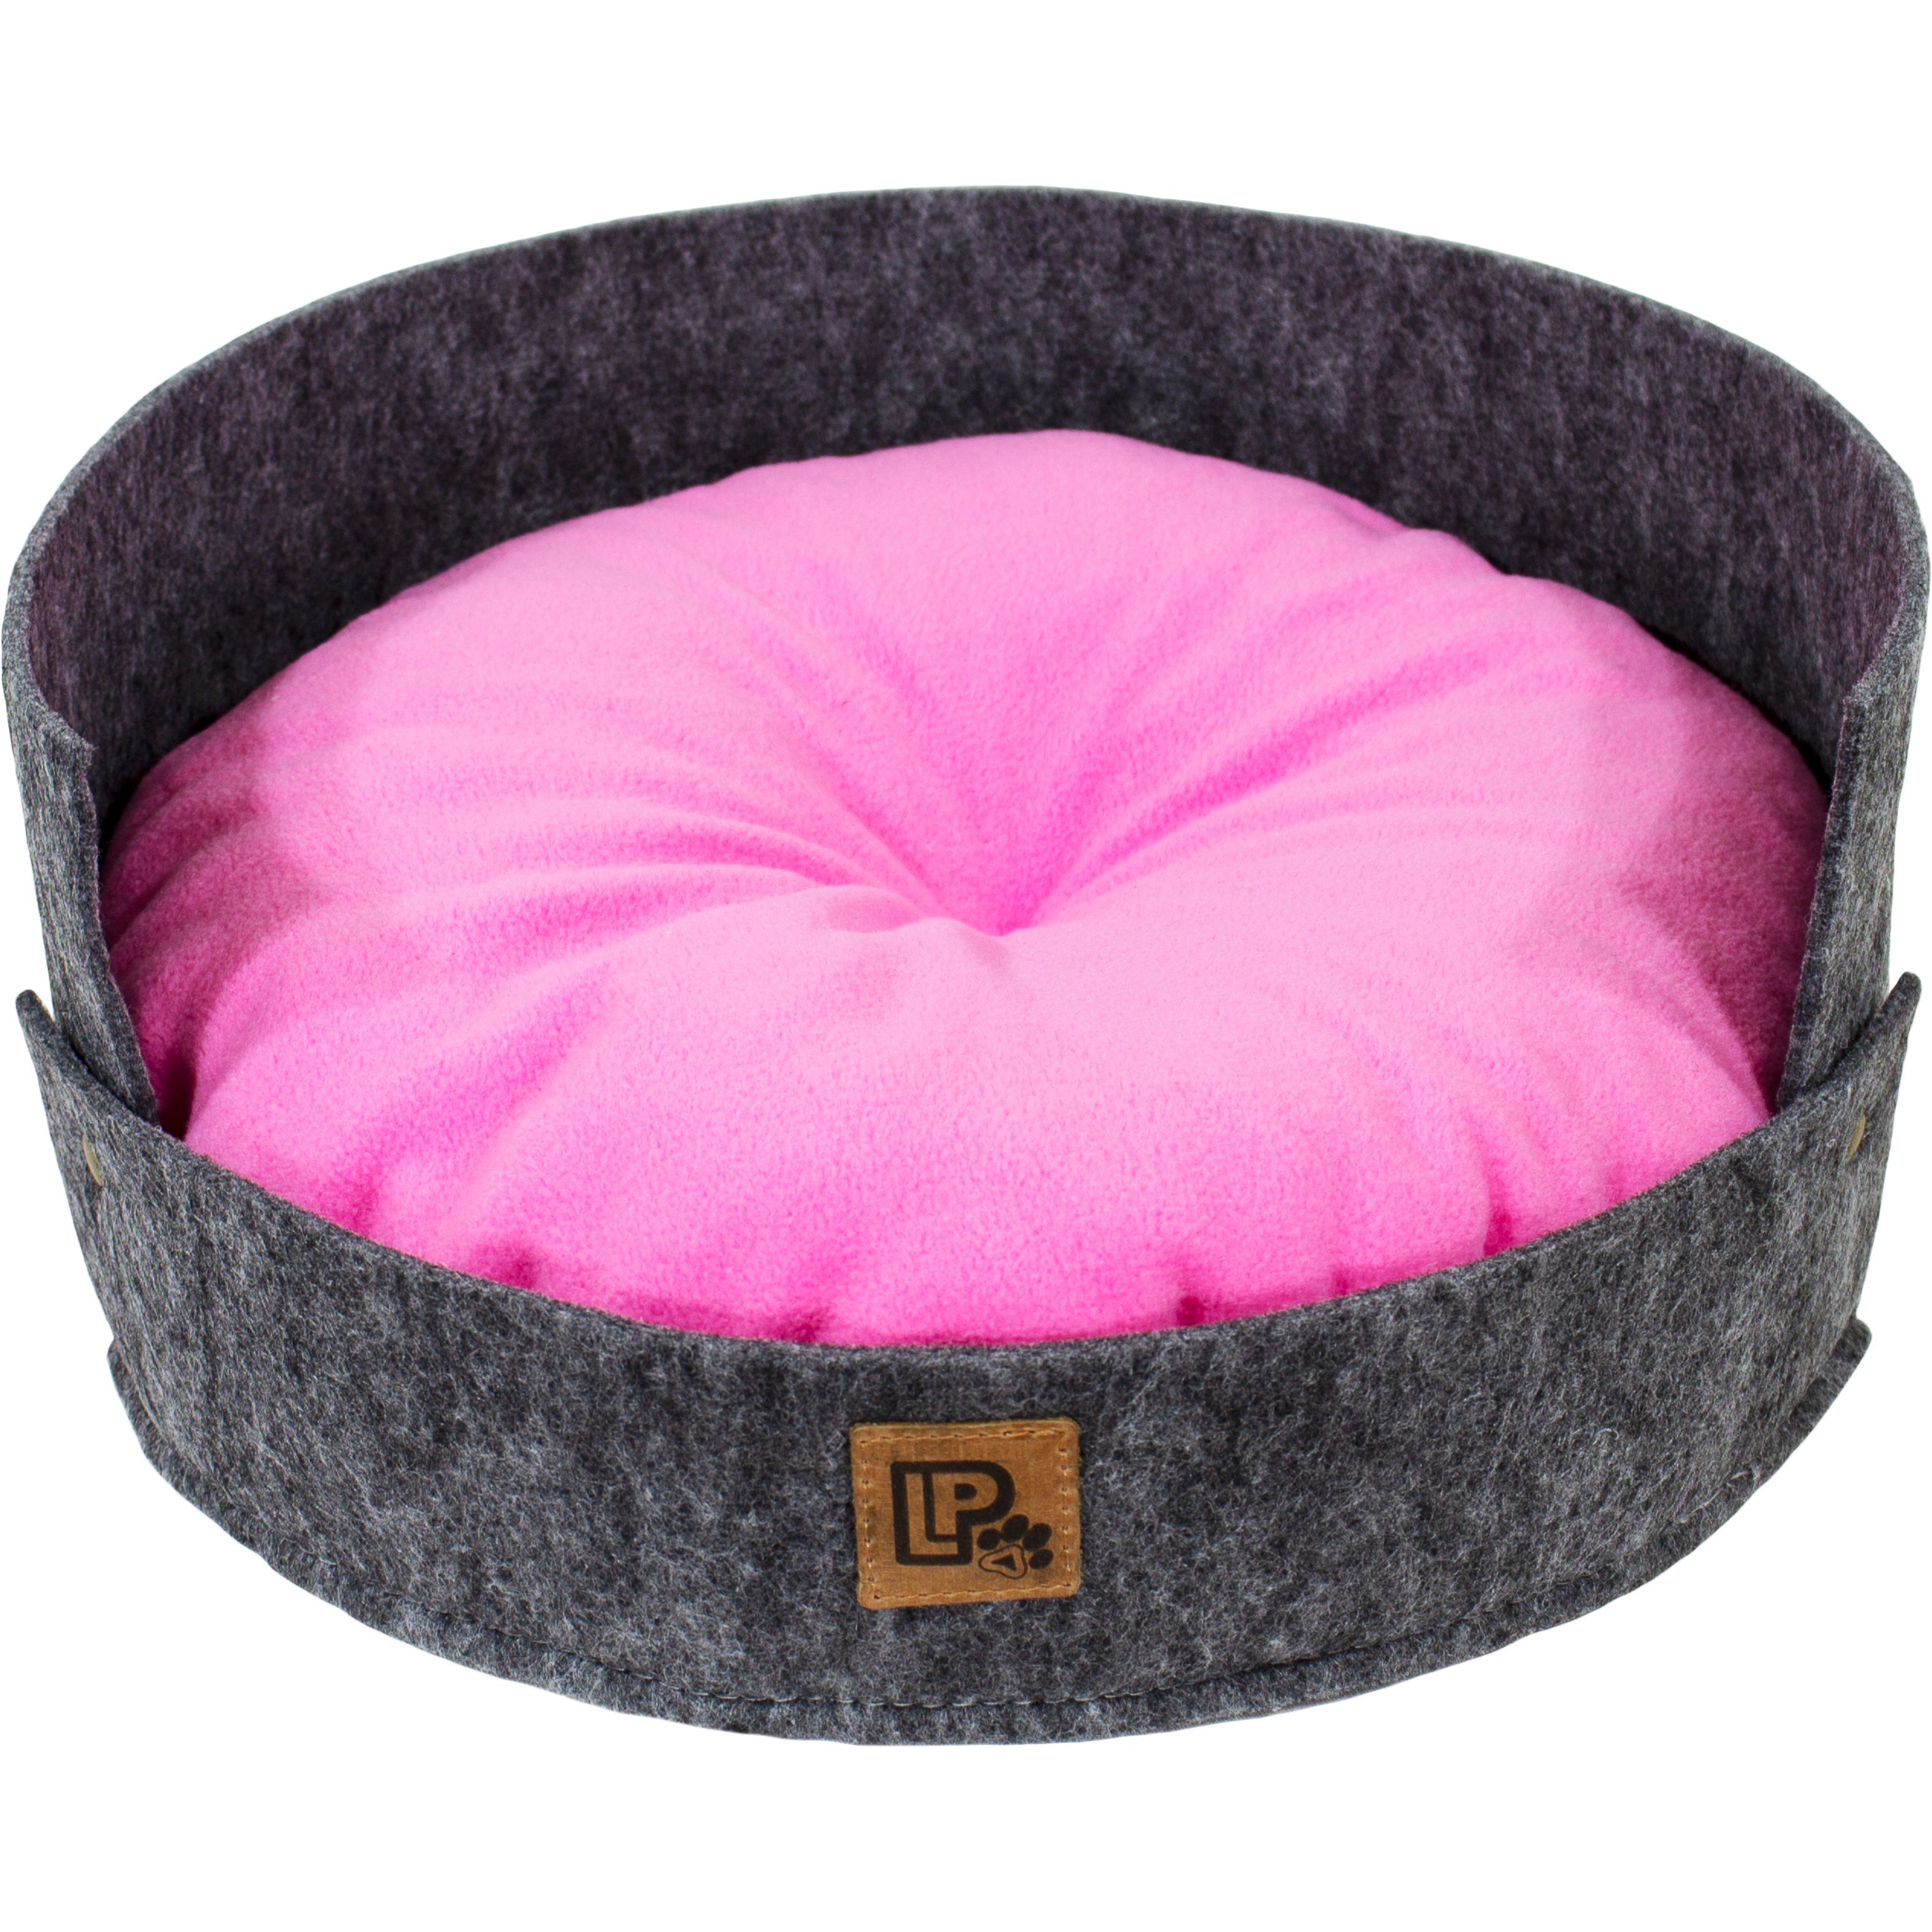 Лежак Lucky Pet Релакс №3 45х45х19 см серый с розовым - фото 1